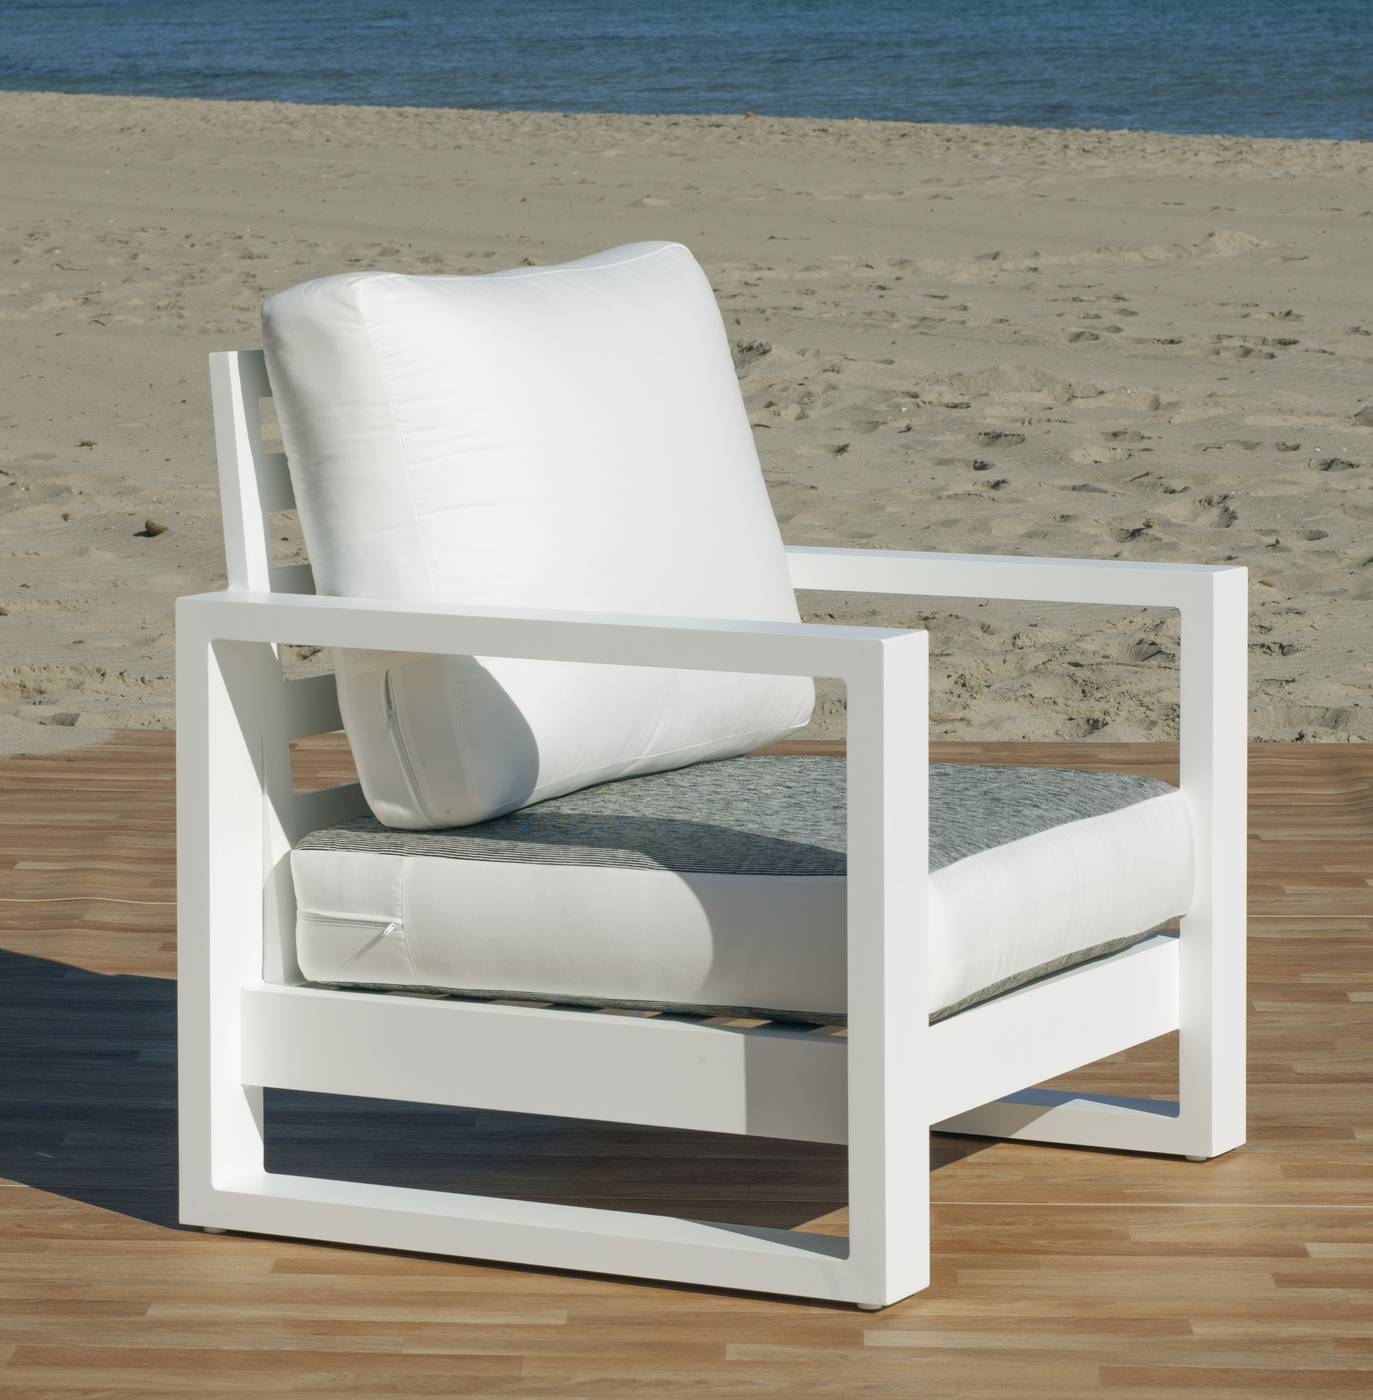 Set Aluminio Luxe Cartago-10 - Conjunto lujoso y robusto de aluminio: 1 sofá de 3 plazas + 2 sillones + 2 reposapiés + 1 mesa de centro + cojines.